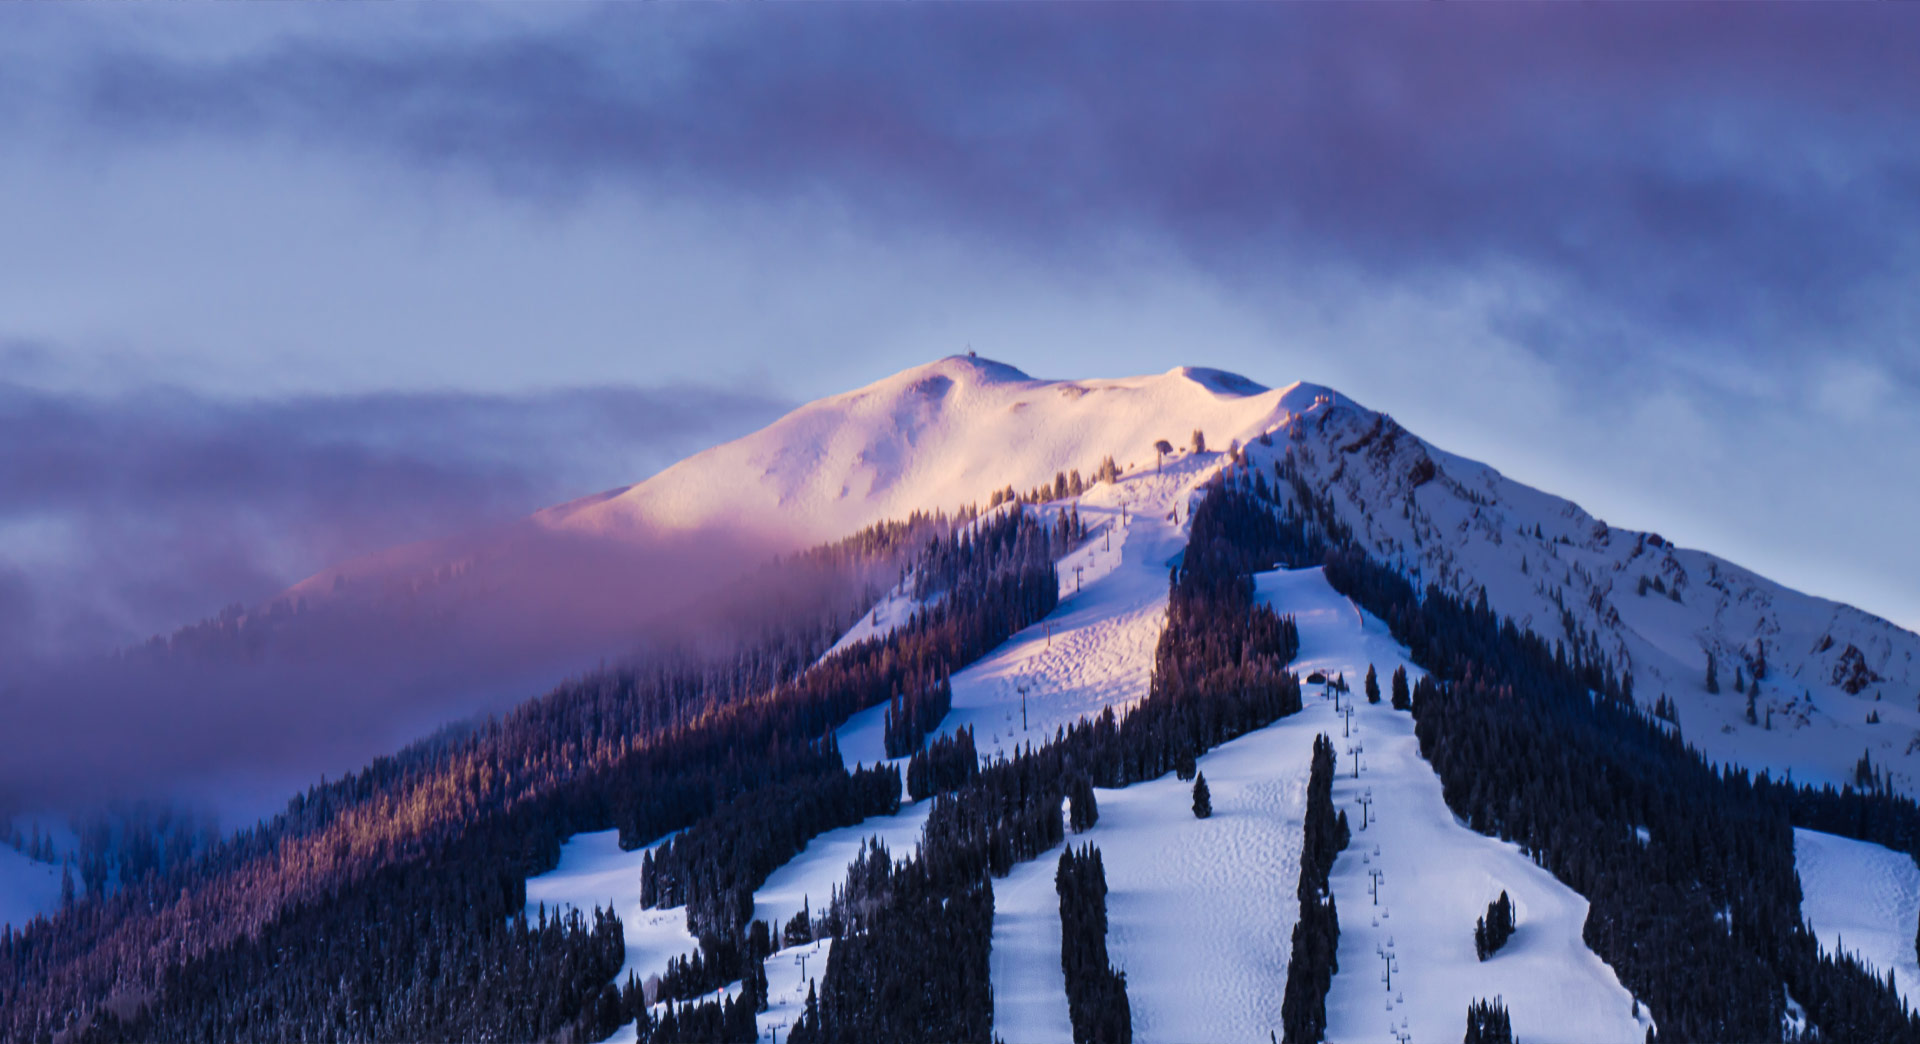 Display Image for Ski slopes at dusk